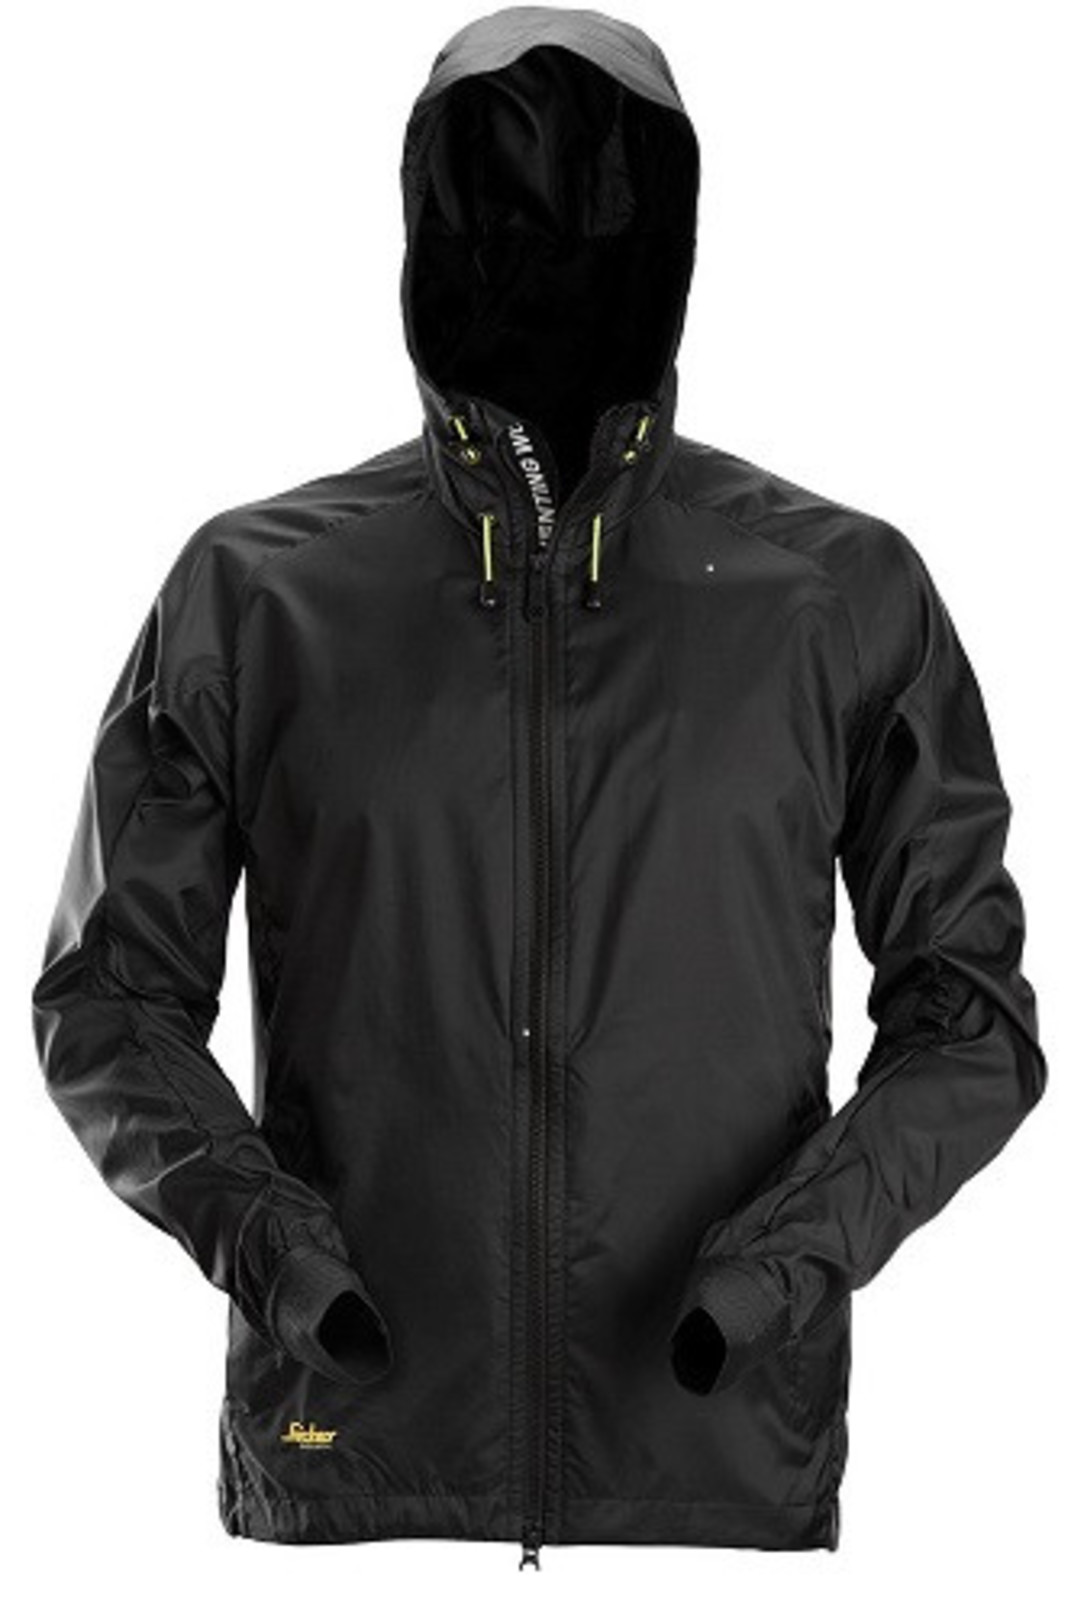 Ľahká bunda proti vetru Snickers® LiteWork Windbreaker - veľkosť: XXL, farba: čierna